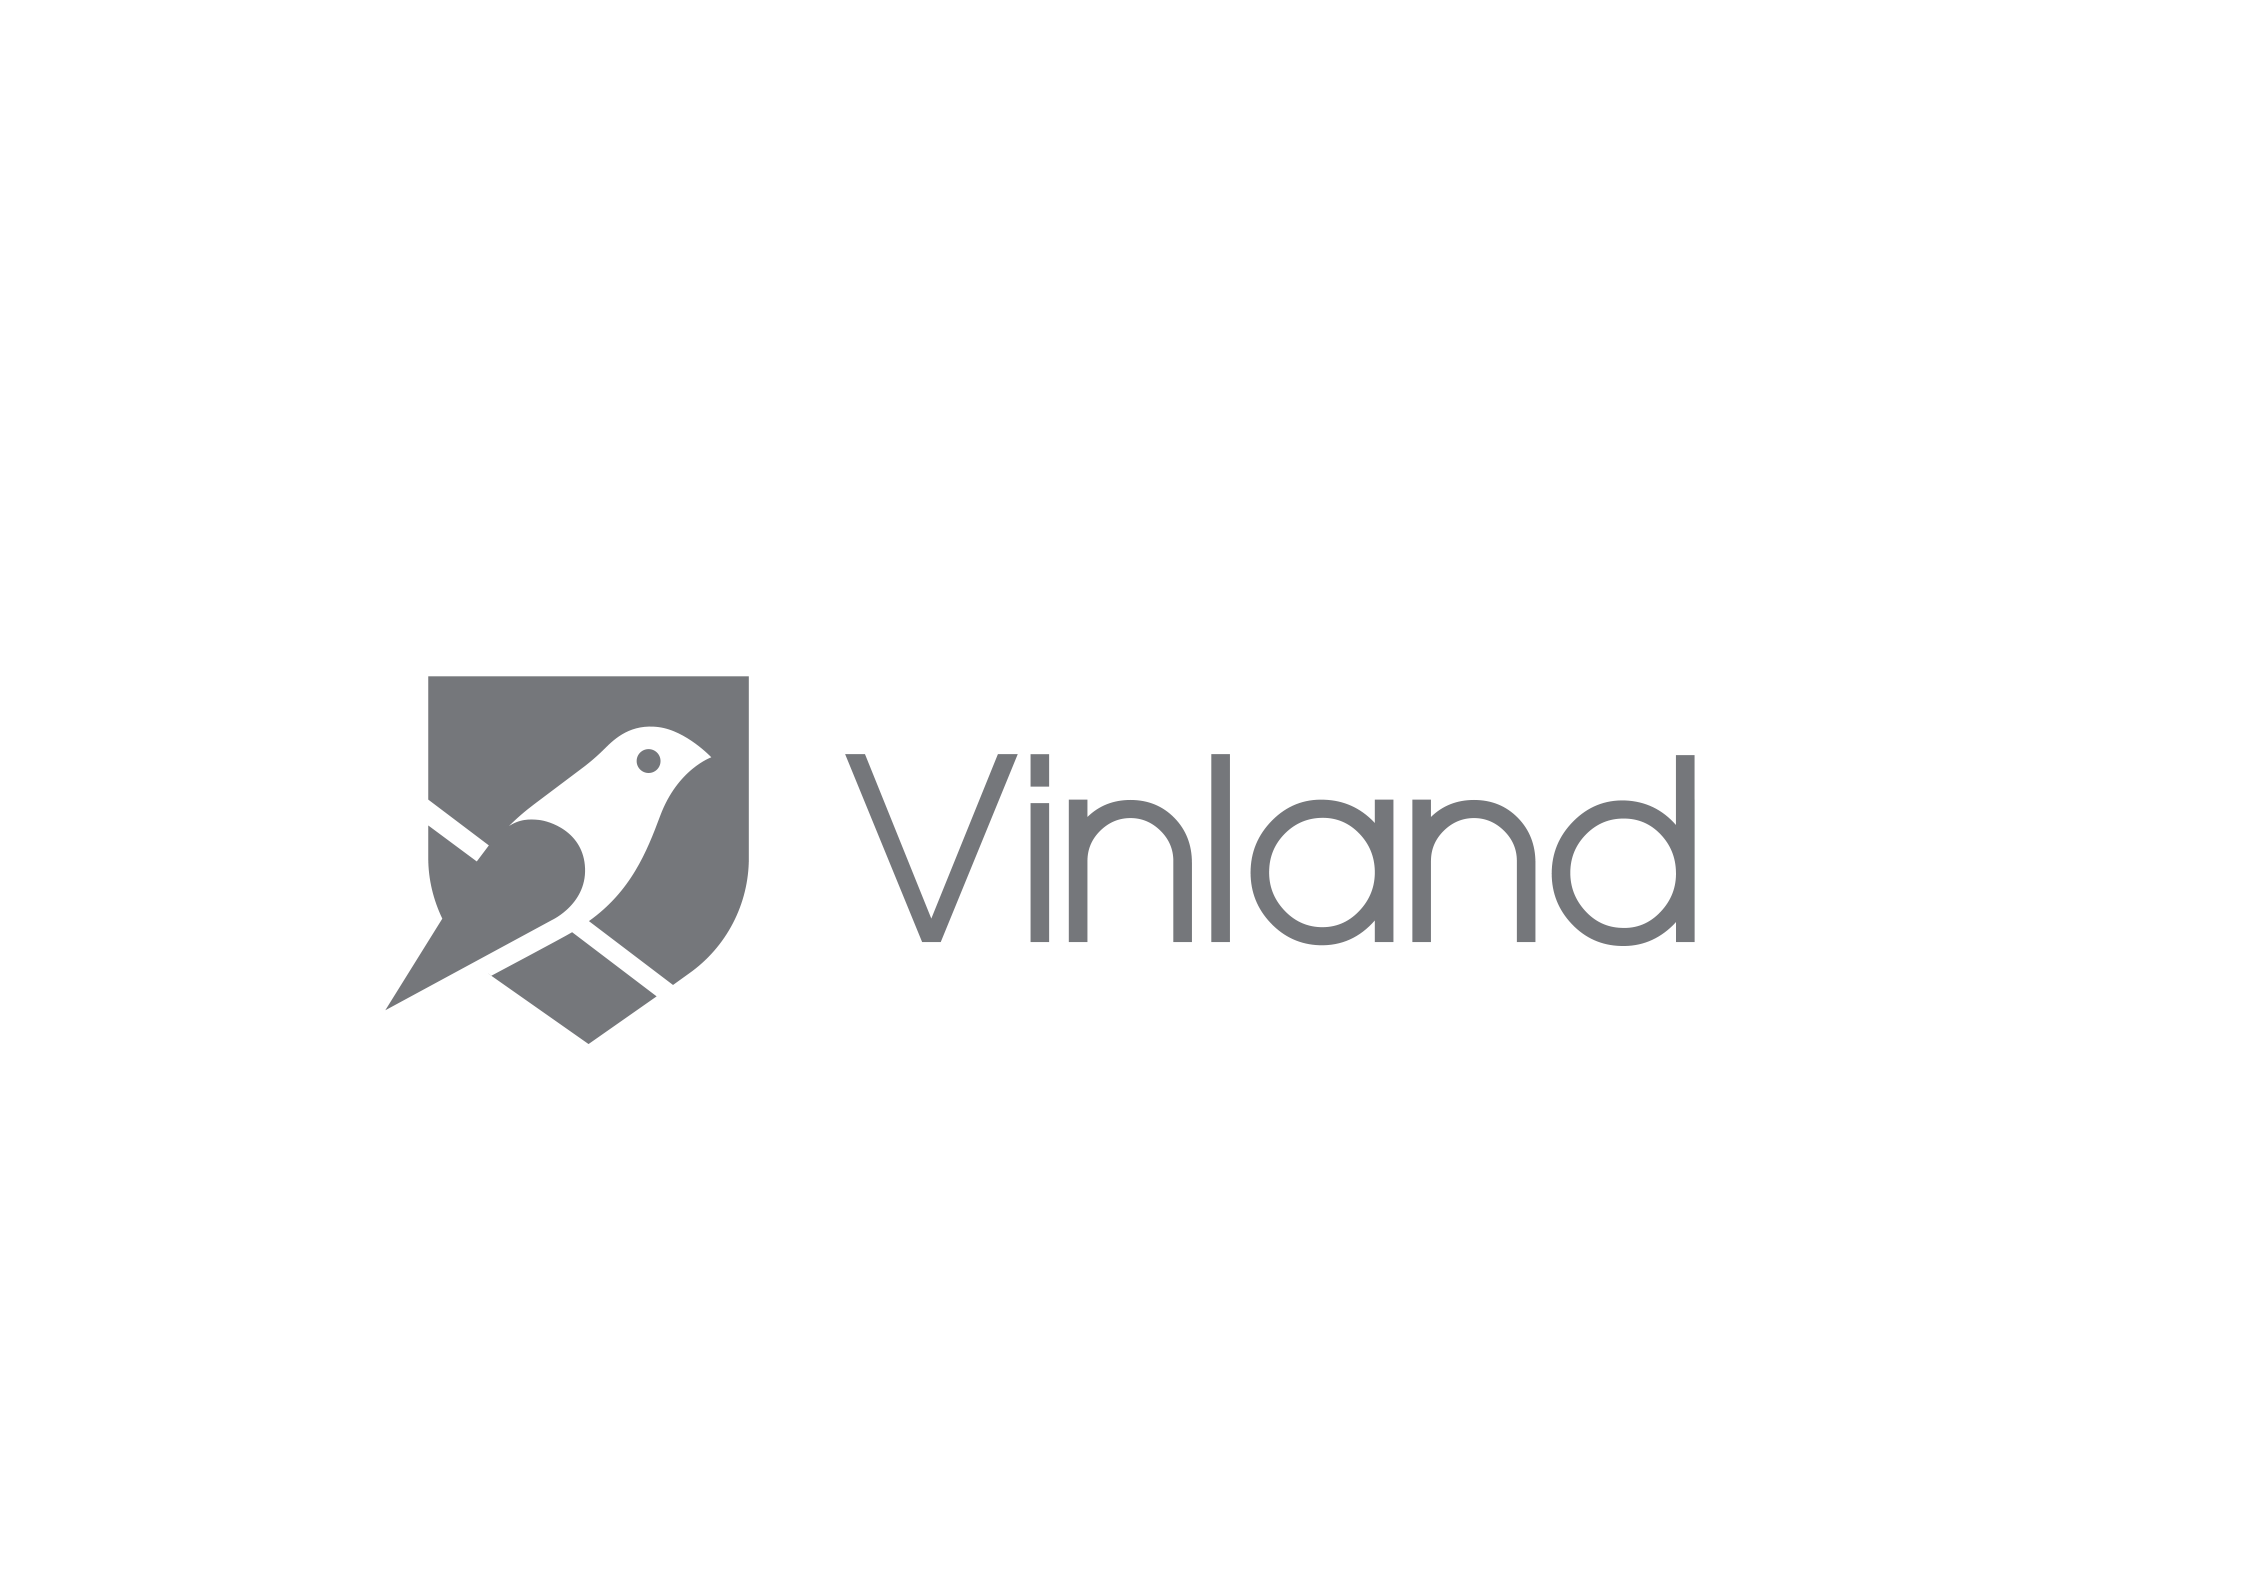 Vinland